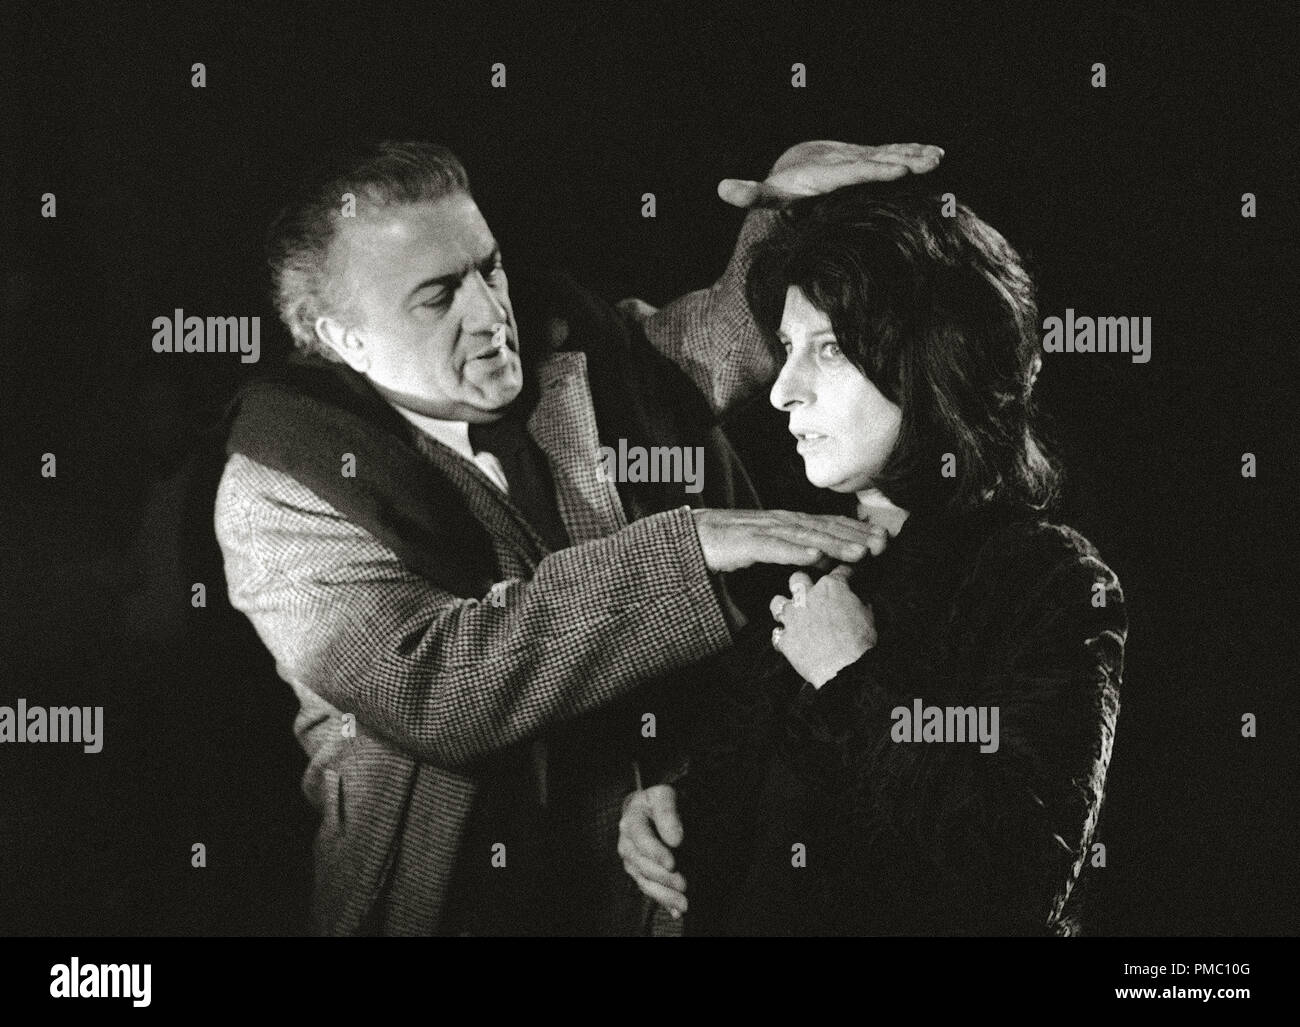 Director de cine italiano Federico Fellini y Anna Magnani en Roma, Italia, en el rodaje de la película "Roma" que dirige (1972) United Artists Archivo de referencia # 33595 022tha Foto de stock